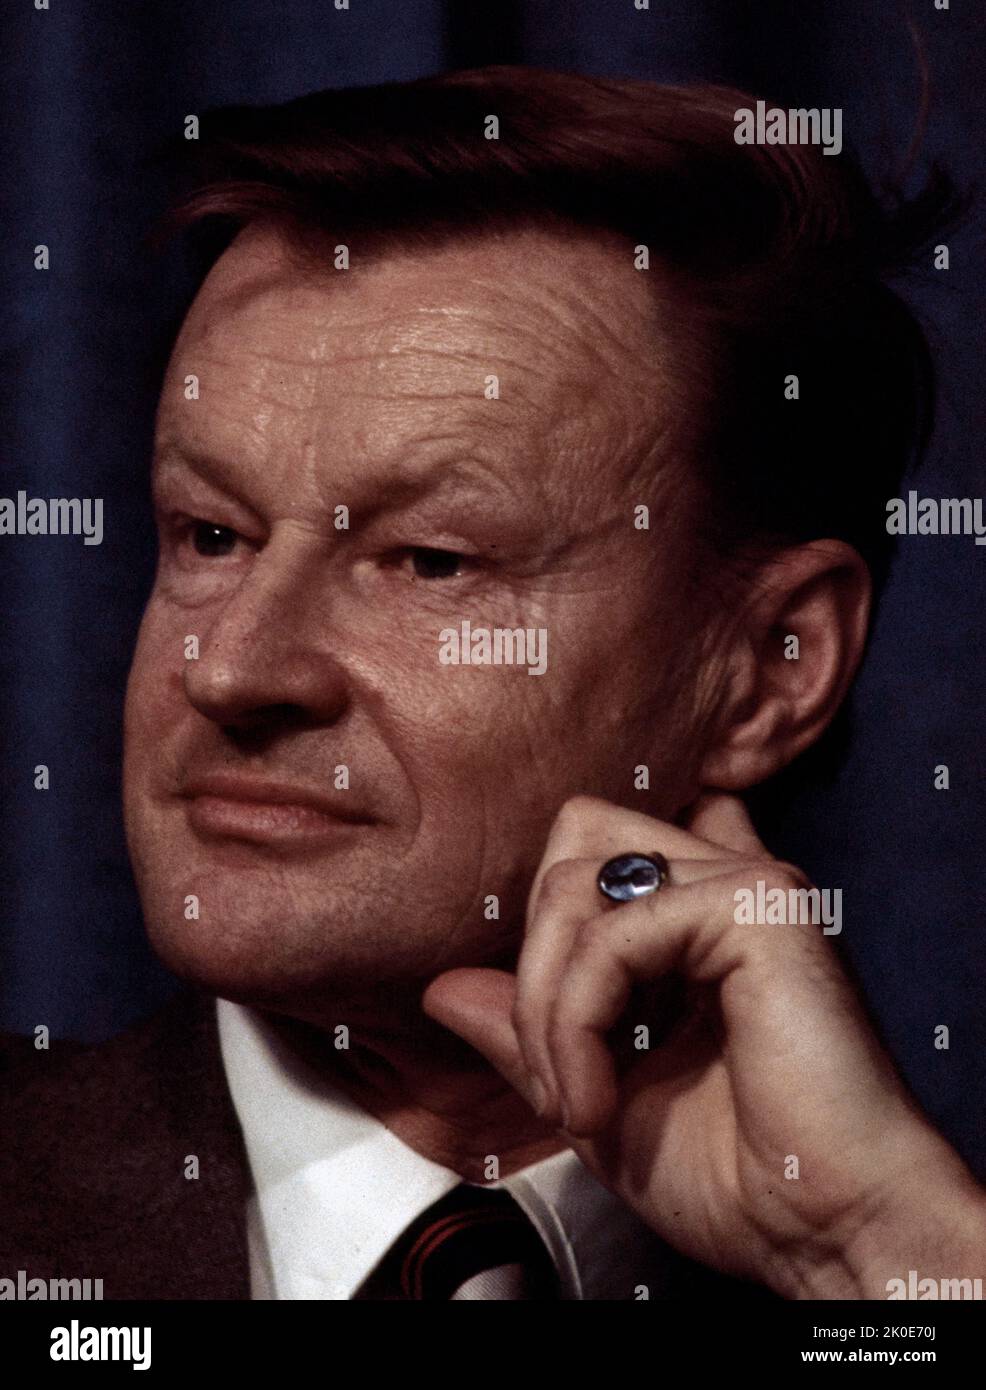 Zbigniew Kazimierz Brzezinski (1928 - 2017) diplomatico e scienziato politico polacco-americano. Dal 1966 al 1968 è stato consigliere del presidente Lyndon B. Johnson ed è stato consigliere per la sicurezza nazionale del presidente Jimmy carter dal 1977 al 1981. Foto Stock